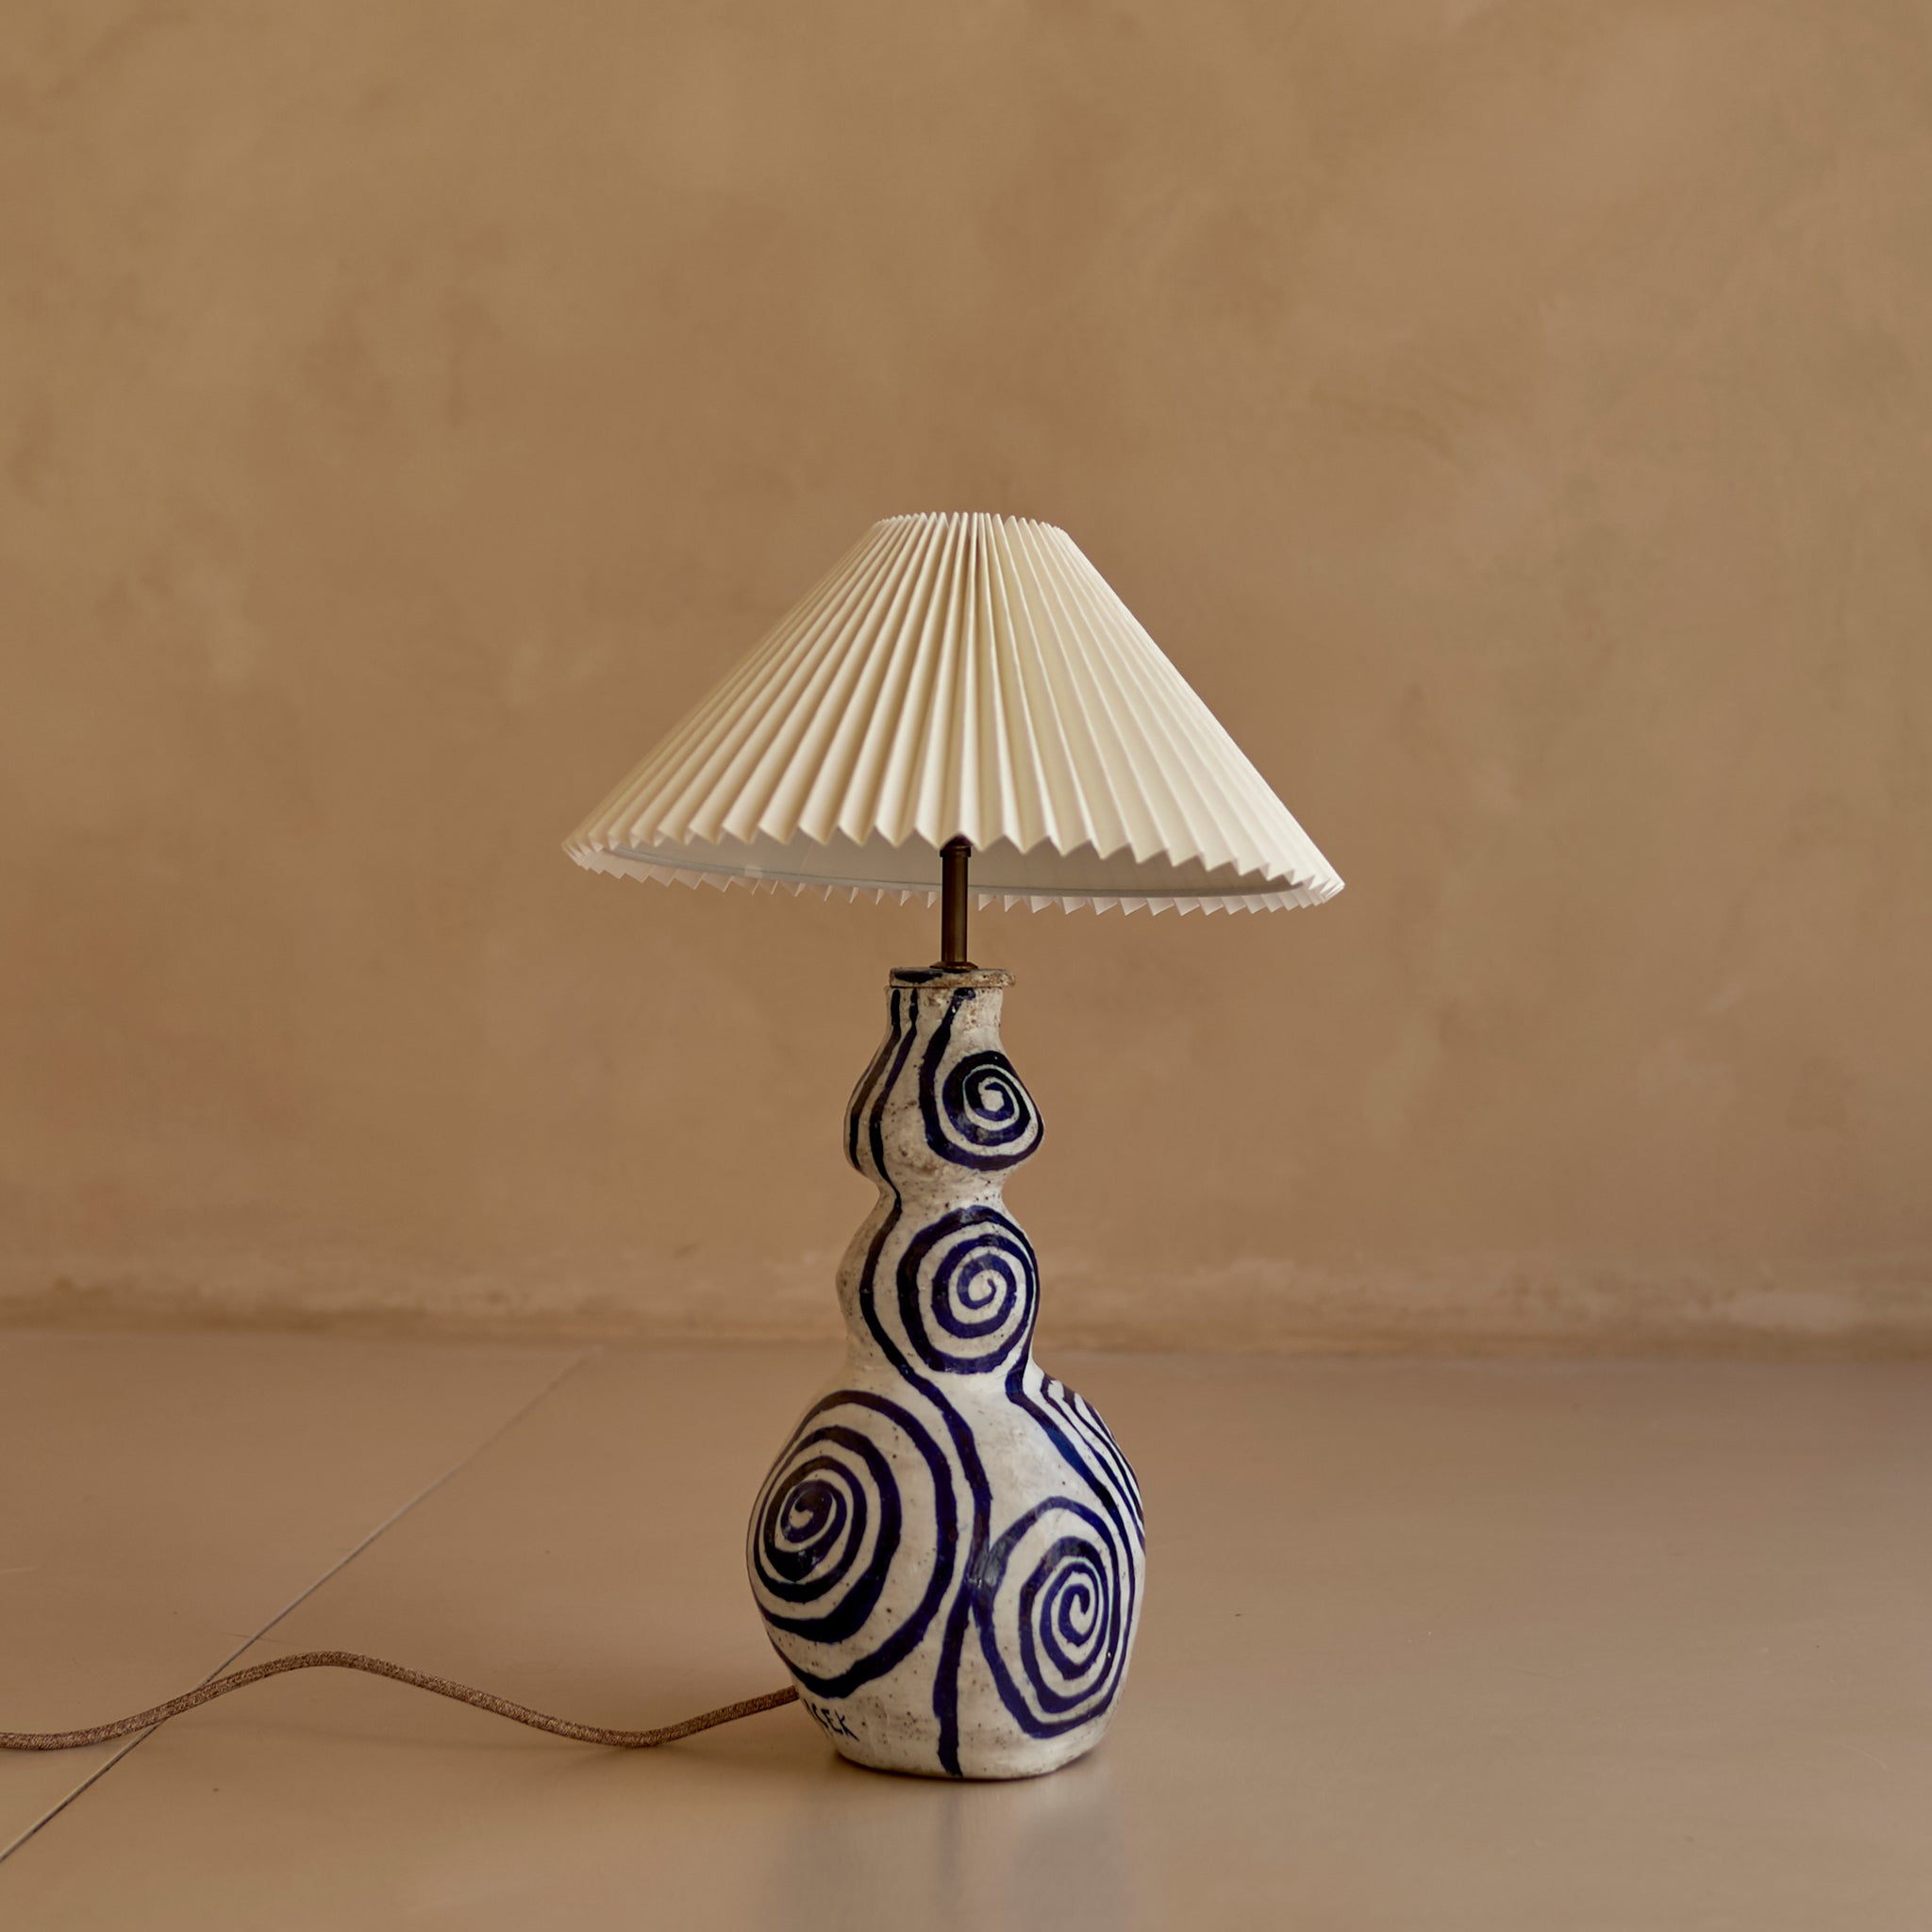 Lamp No. 10